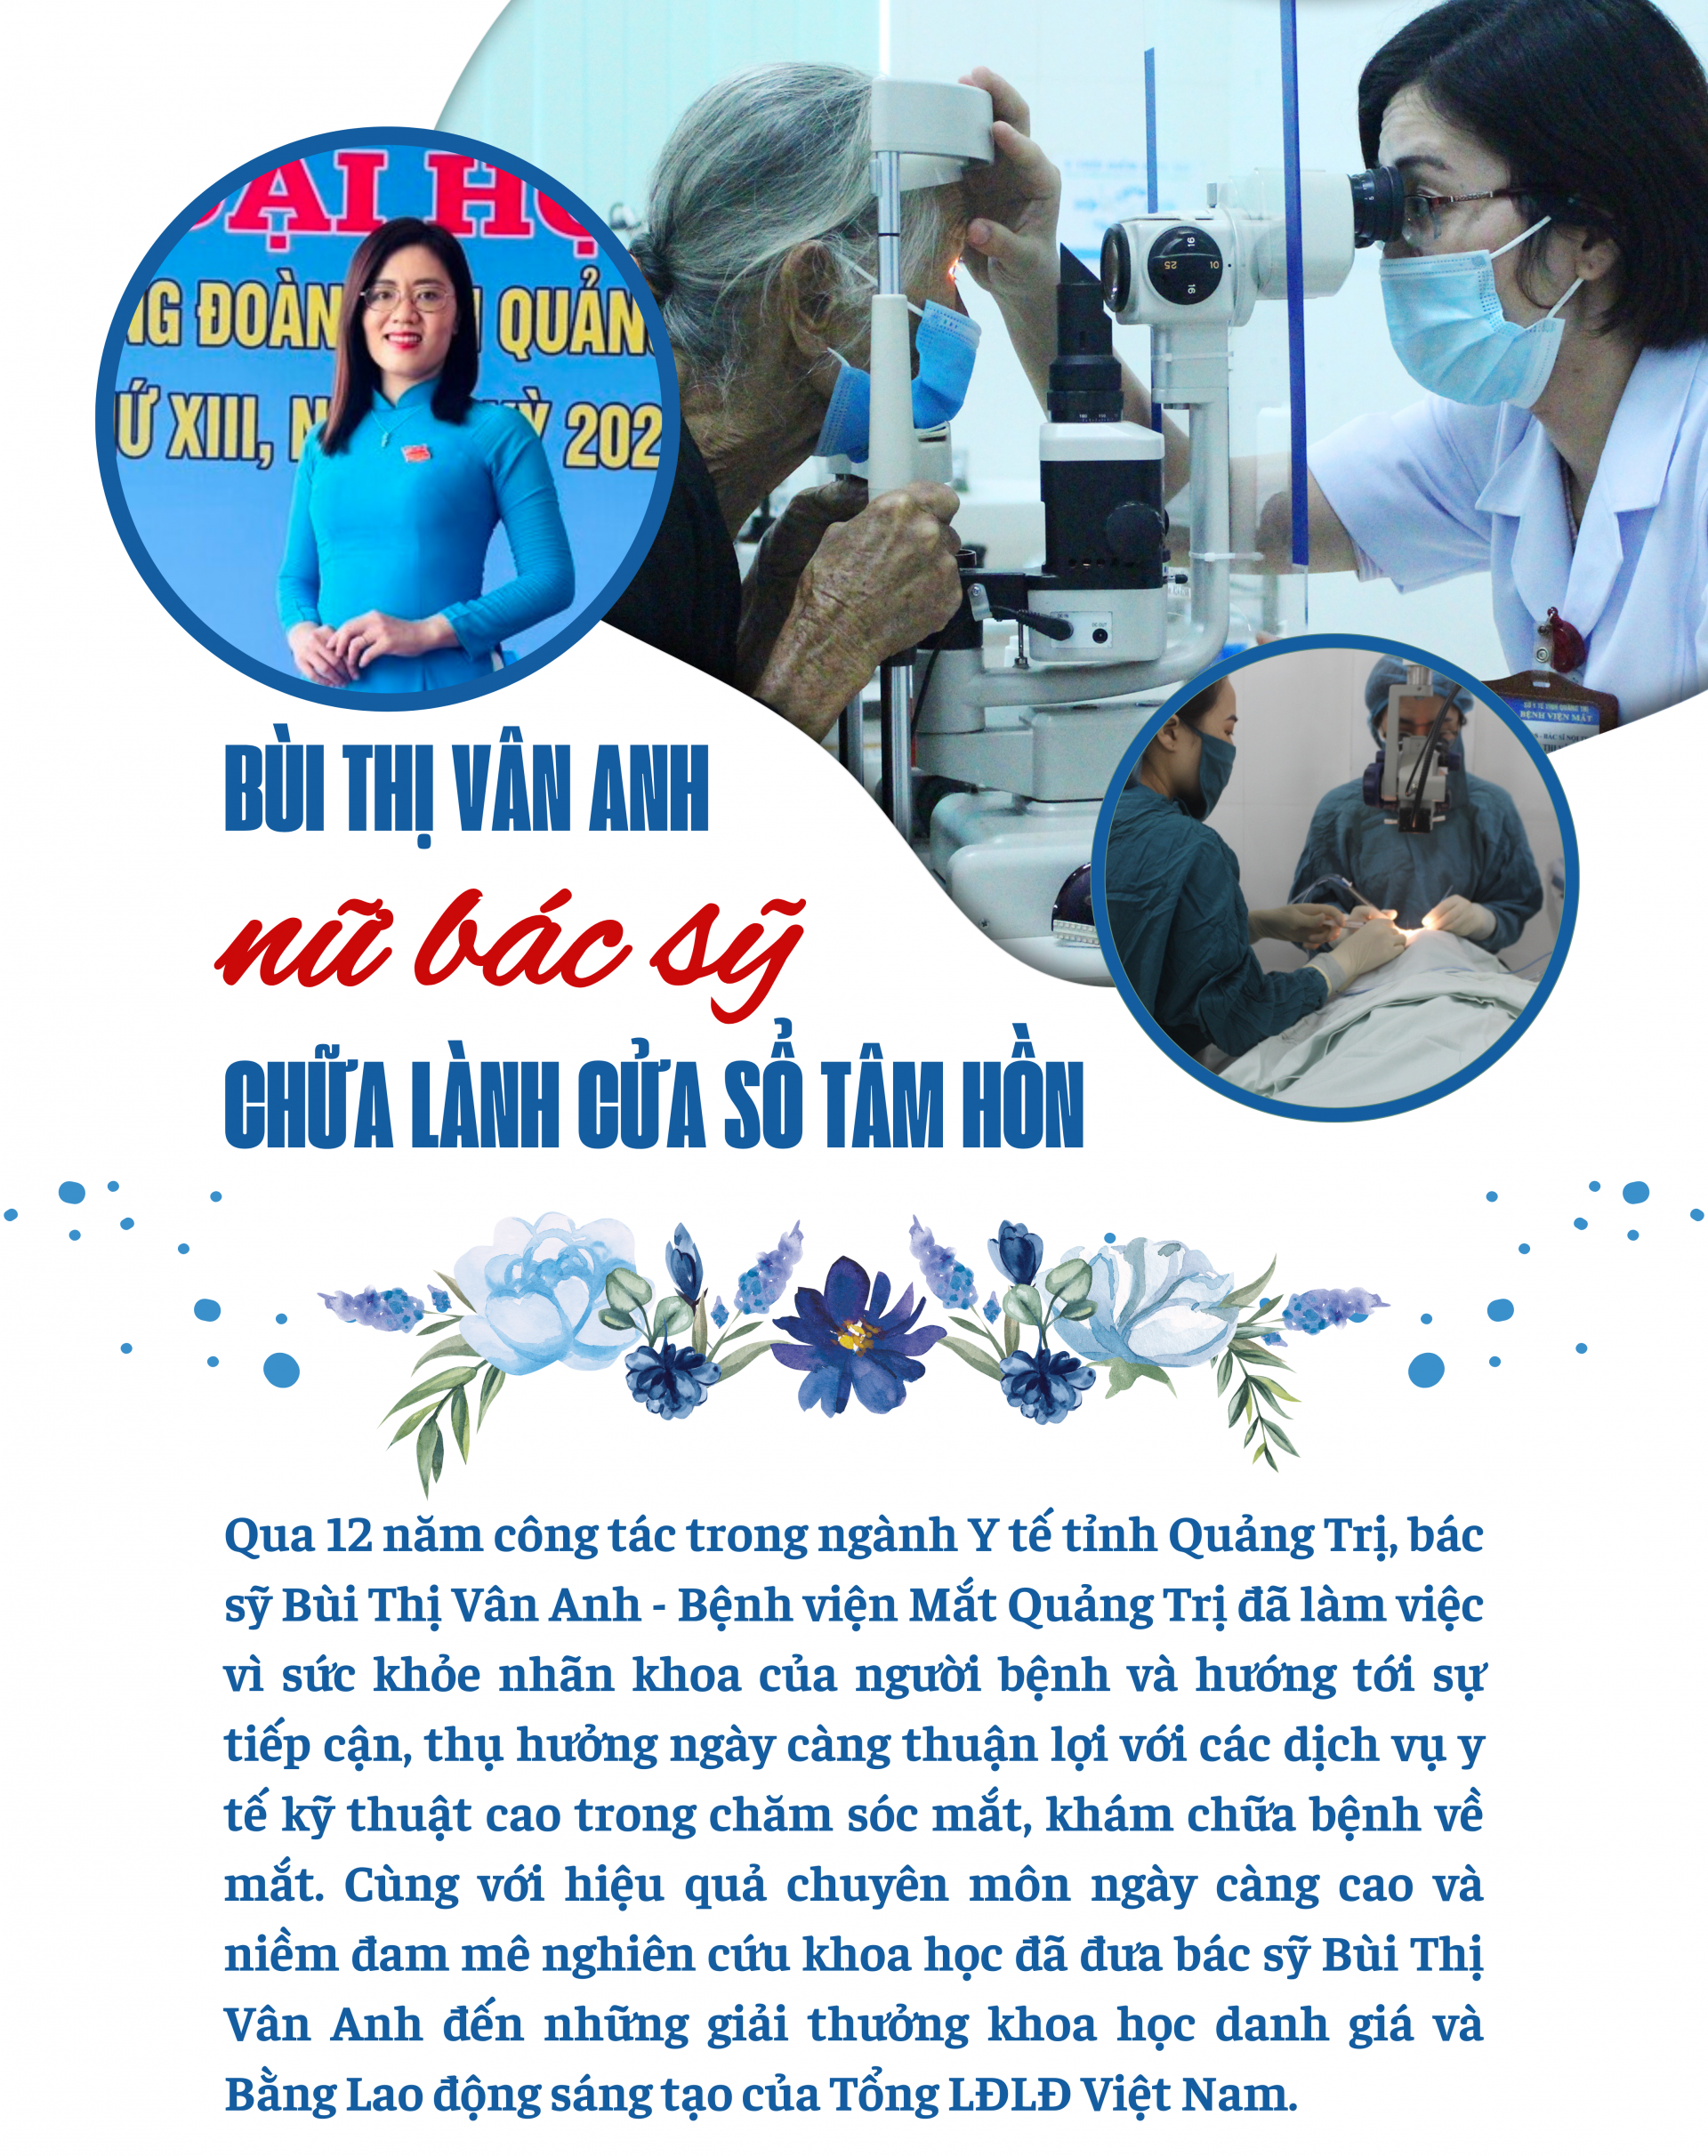 Bùi Thị Vân Anh - nữ bác sỹ chữa lành cửa sổ tâm hồn